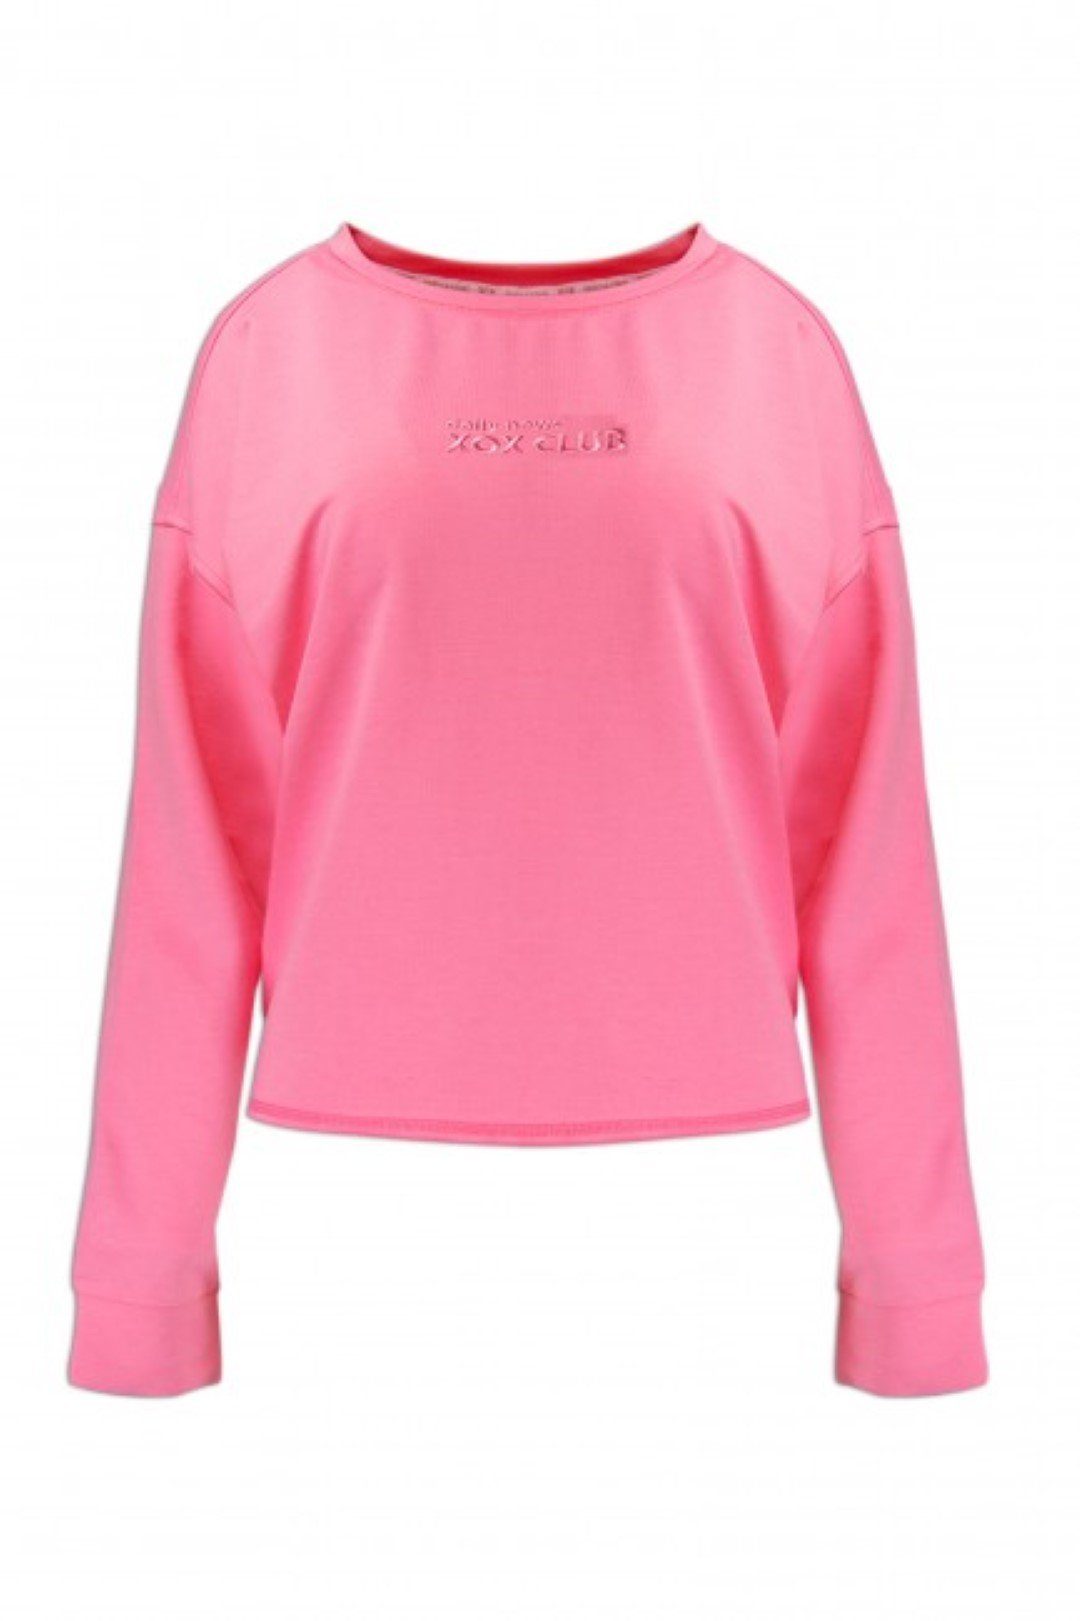 Oberteil, - Trade, Longsleeve, U-Boot pink XOX XOX Hoodie Sweatshirt Shirt, Fair Damenmode Ausschnitt,